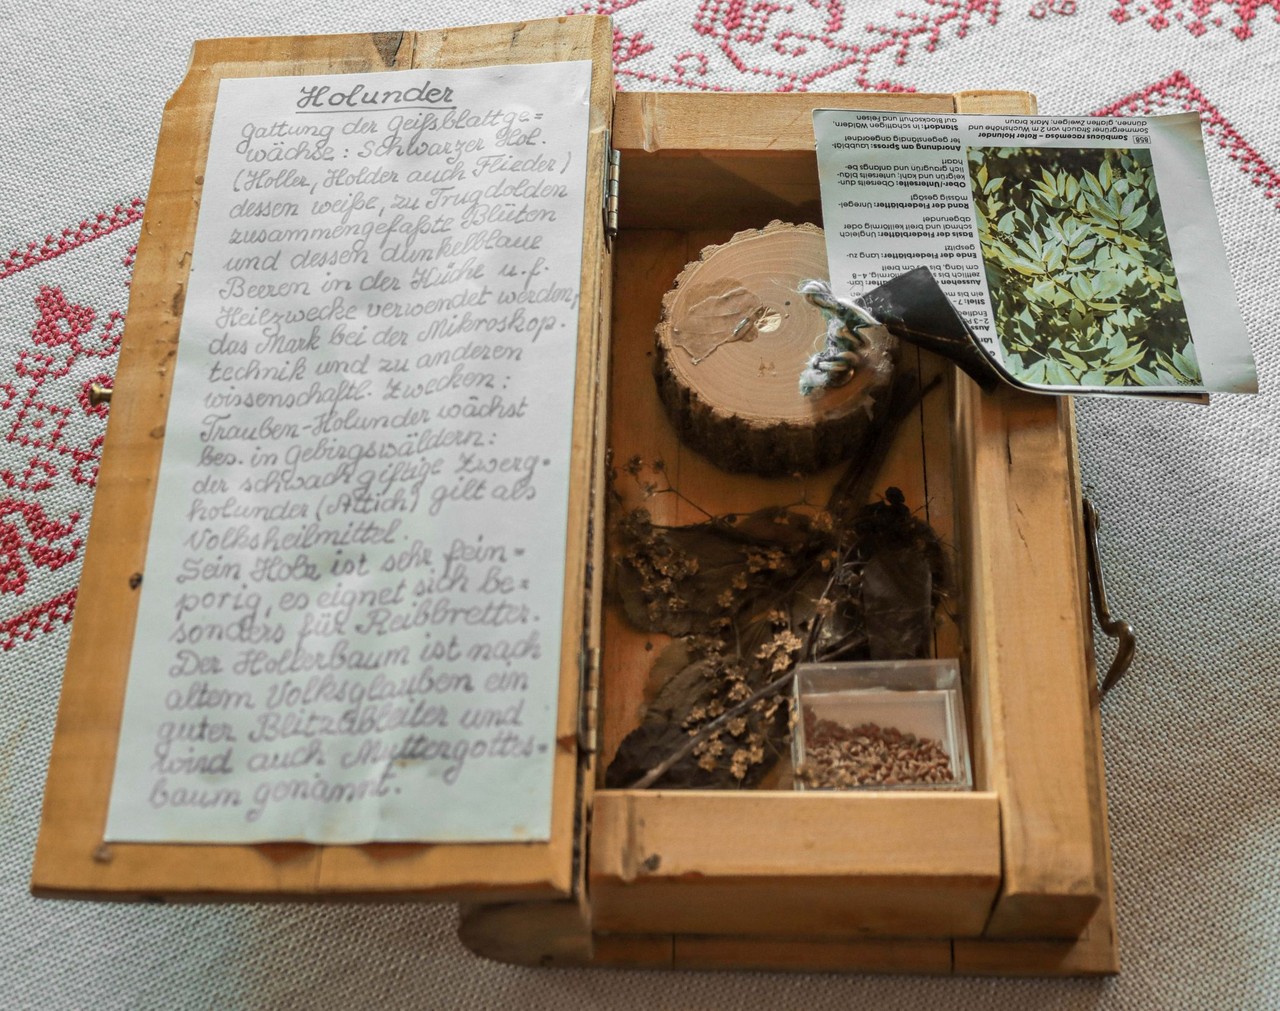 Jedes Buch enthält im Inneren Blätter, Nadeln, Früchte und Samen sowie eine ausführliche Beschreibung der jeweiligen Holzart. Foto: Simon Hausstetter